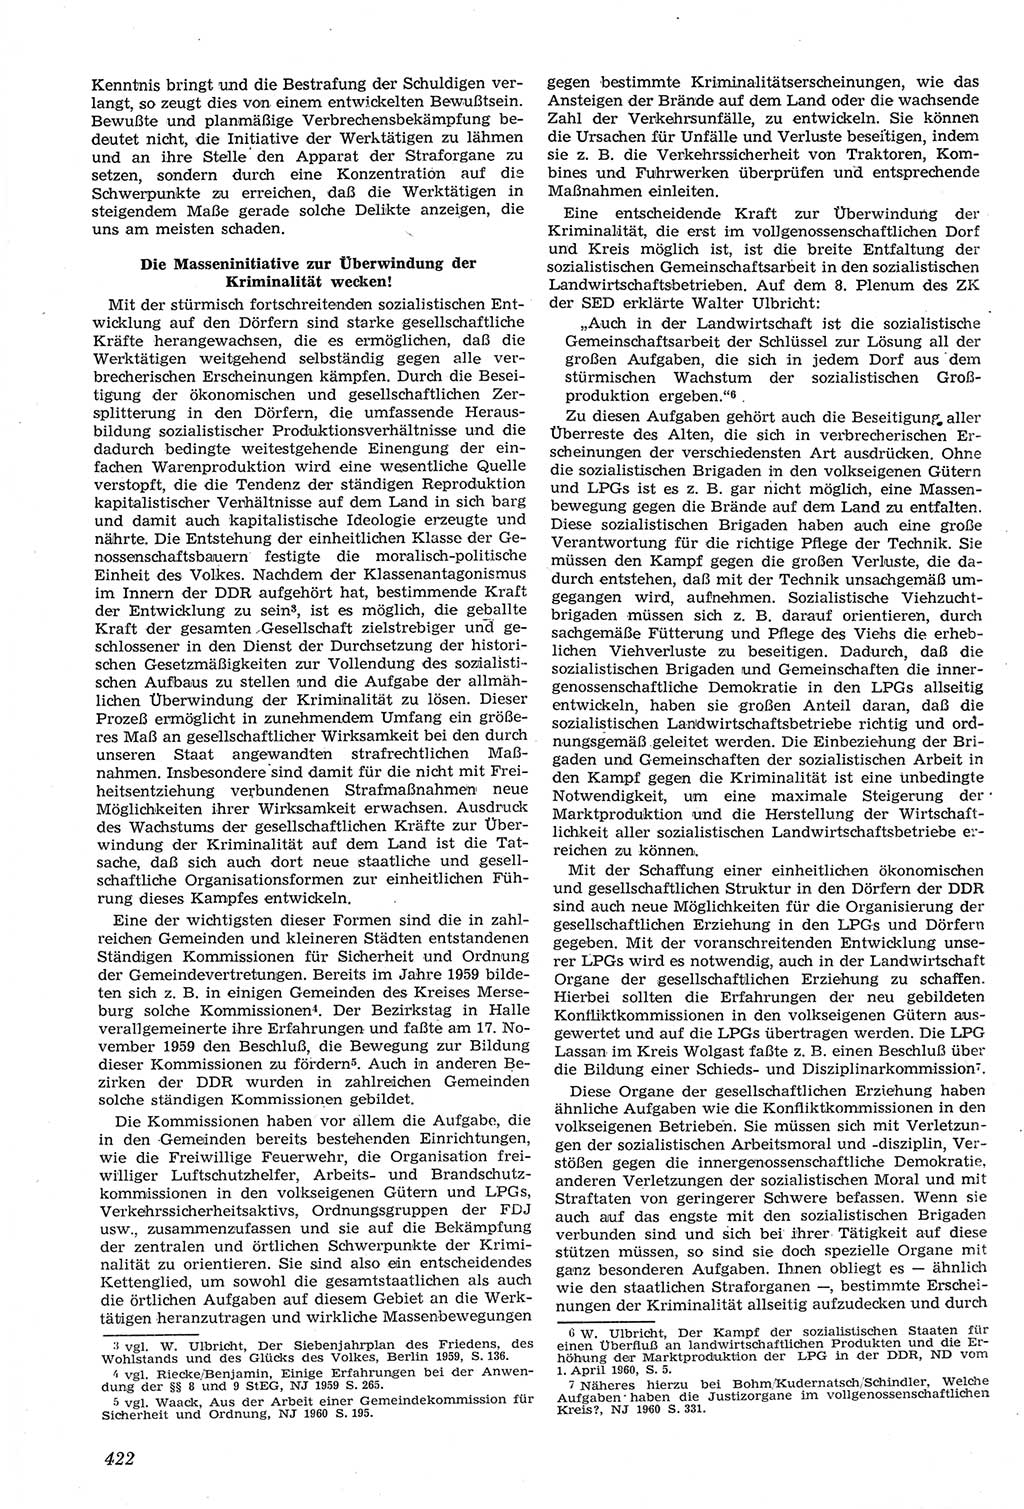 Neue Justiz (NJ), Zeitschrift für Recht und Rechtswissenschaft [Deutsche Demokratische Republik (DDR)], 14. Jahrgang 1960, Seite 422 (NJ DDR 1960, S. 422)